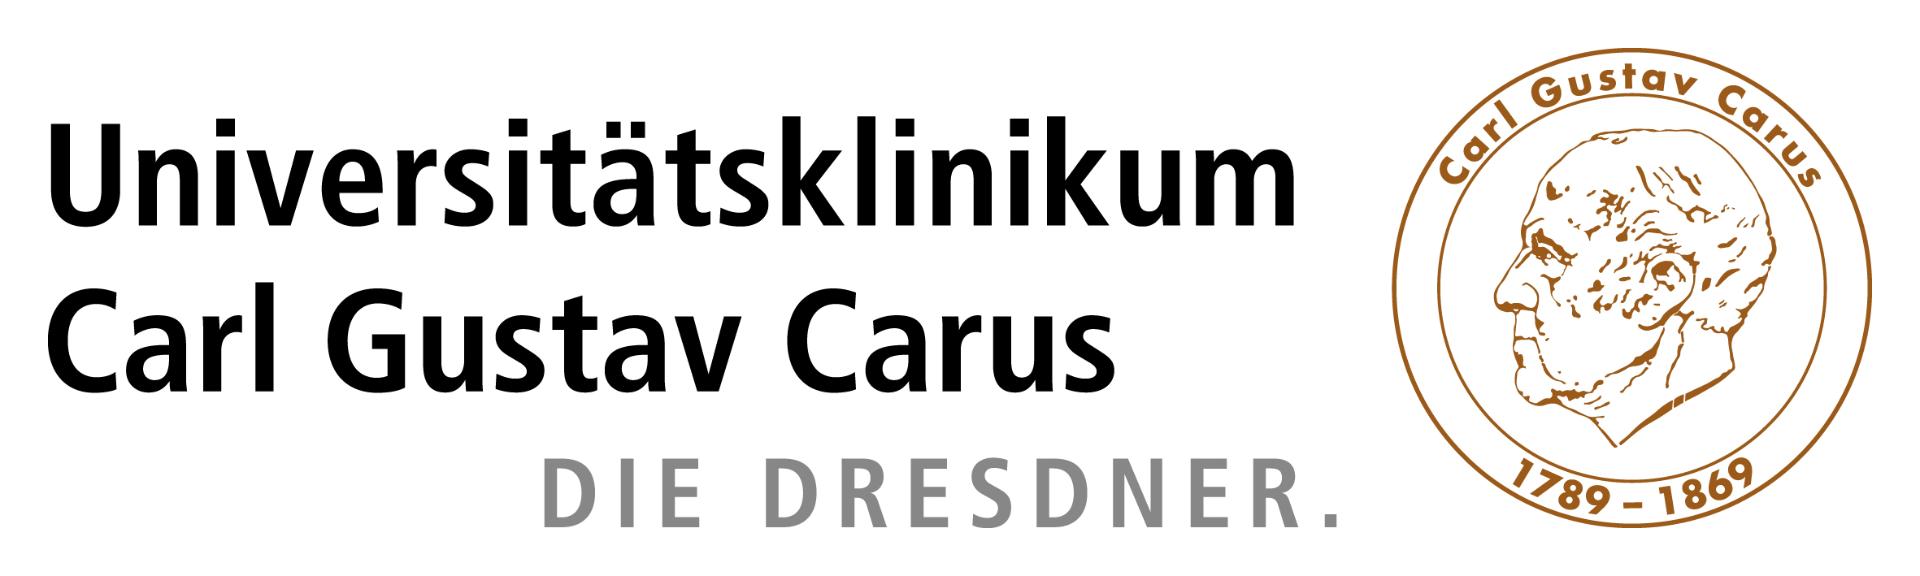 Universitätsklinikum Carl Gustav Carus Logo